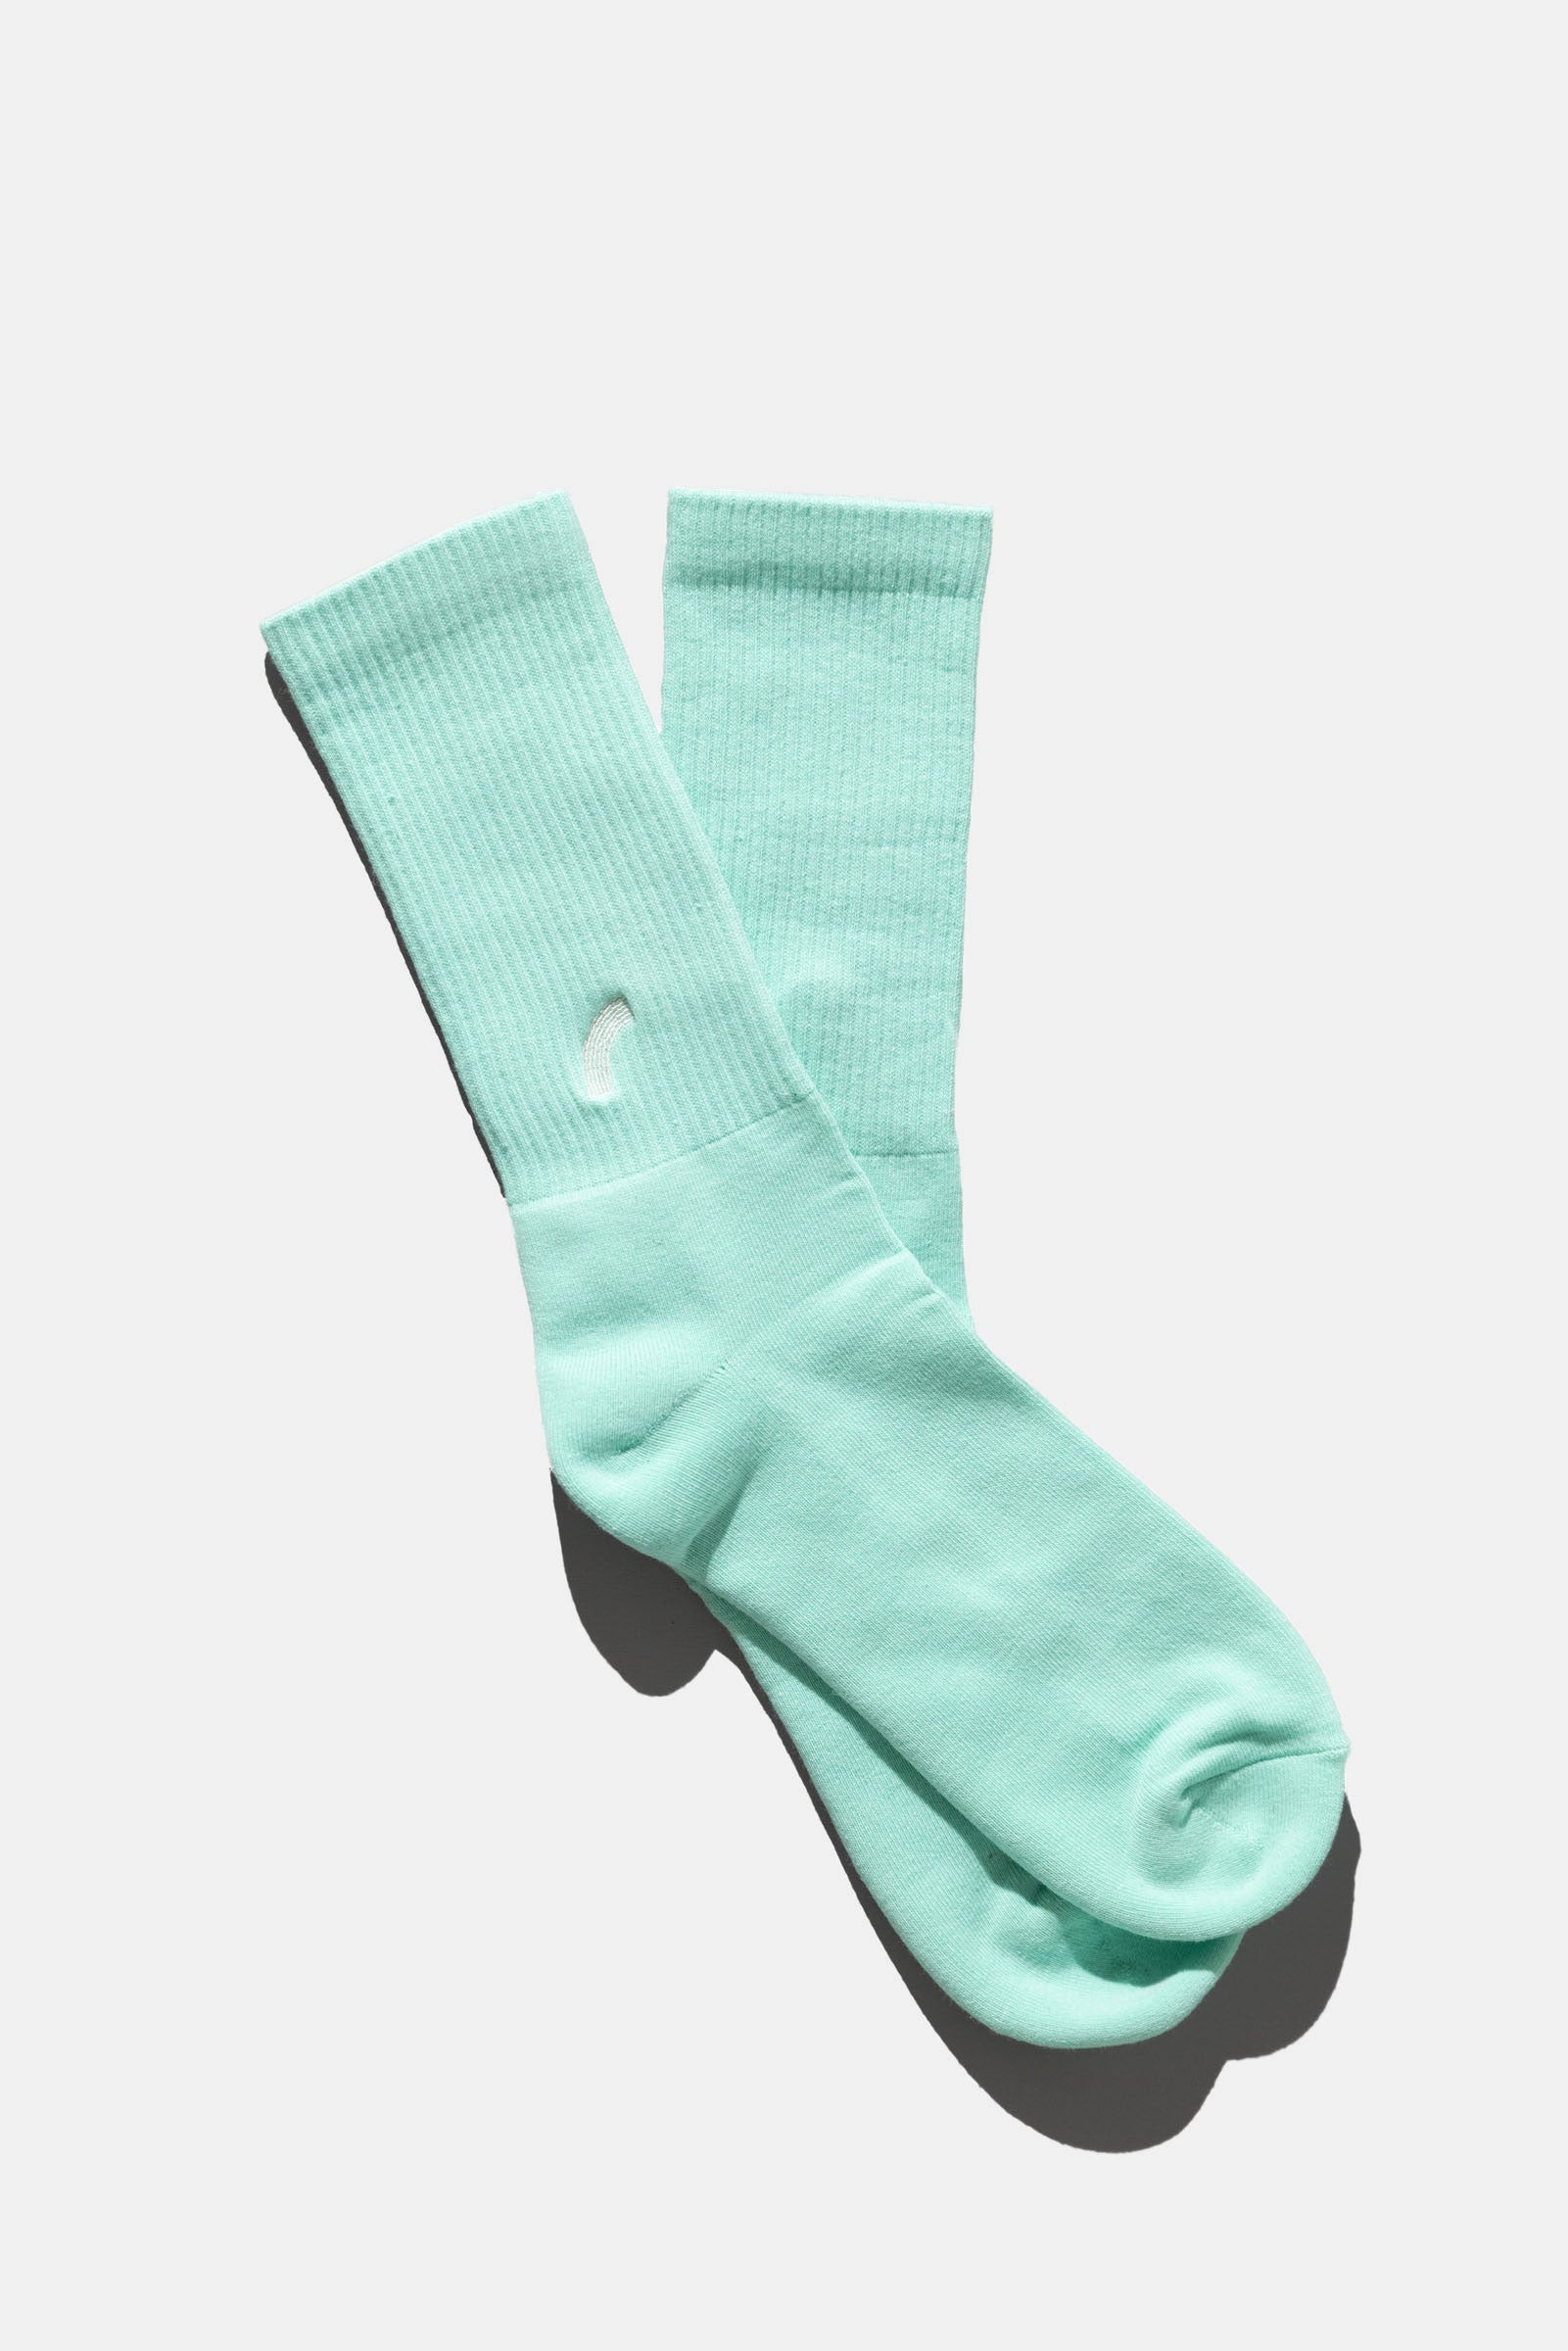 mint socks